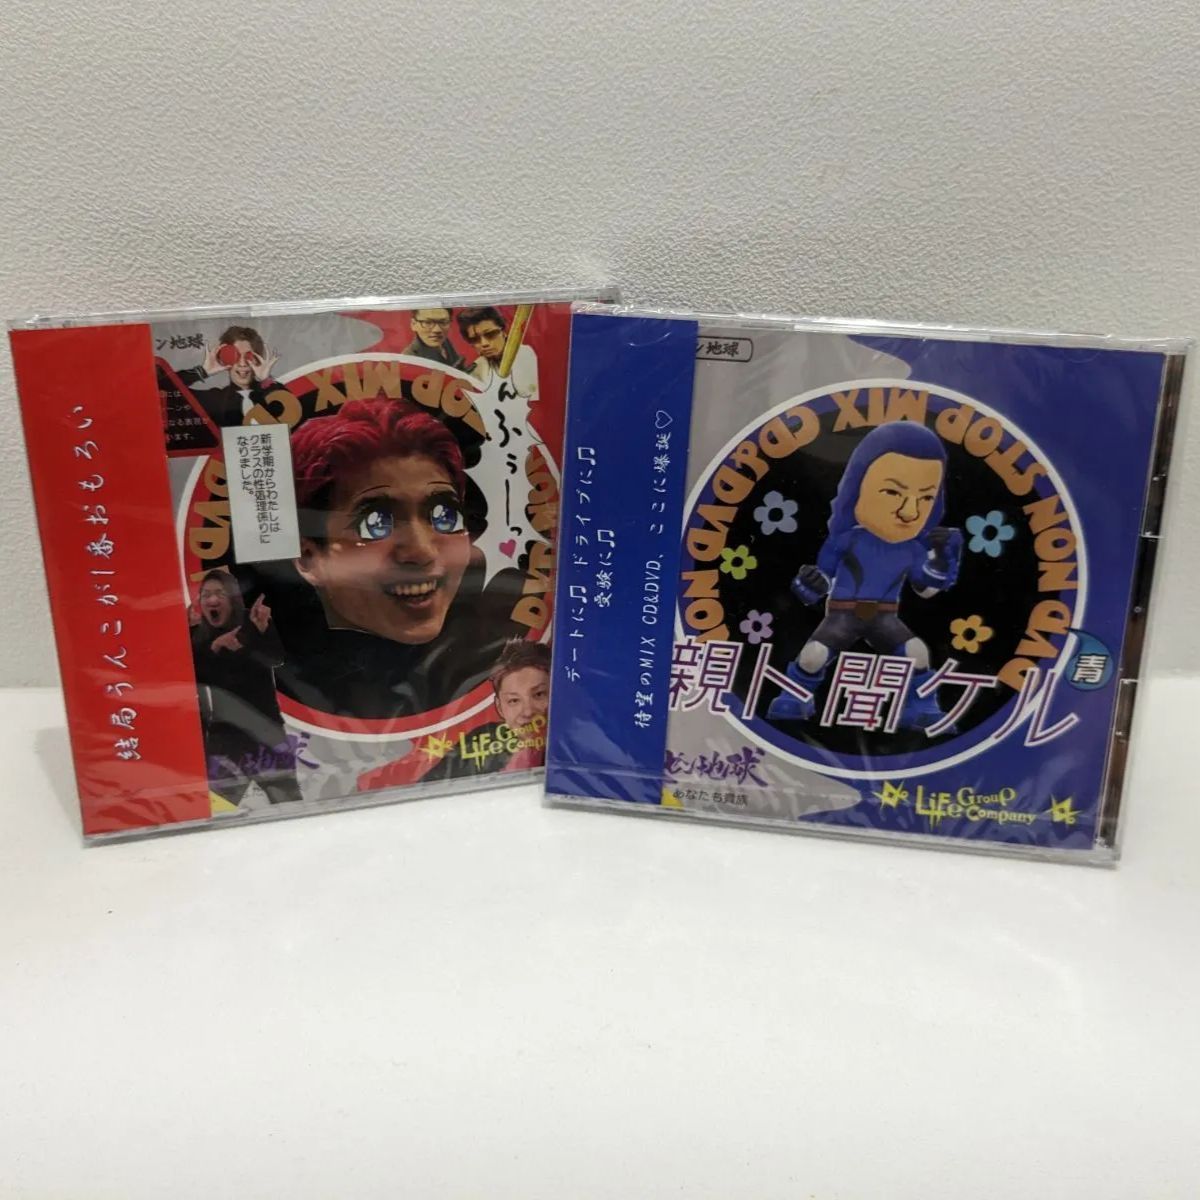 経典ブランド レペゼン地球CD&DVD ミュージック - thegreatconsultants.com